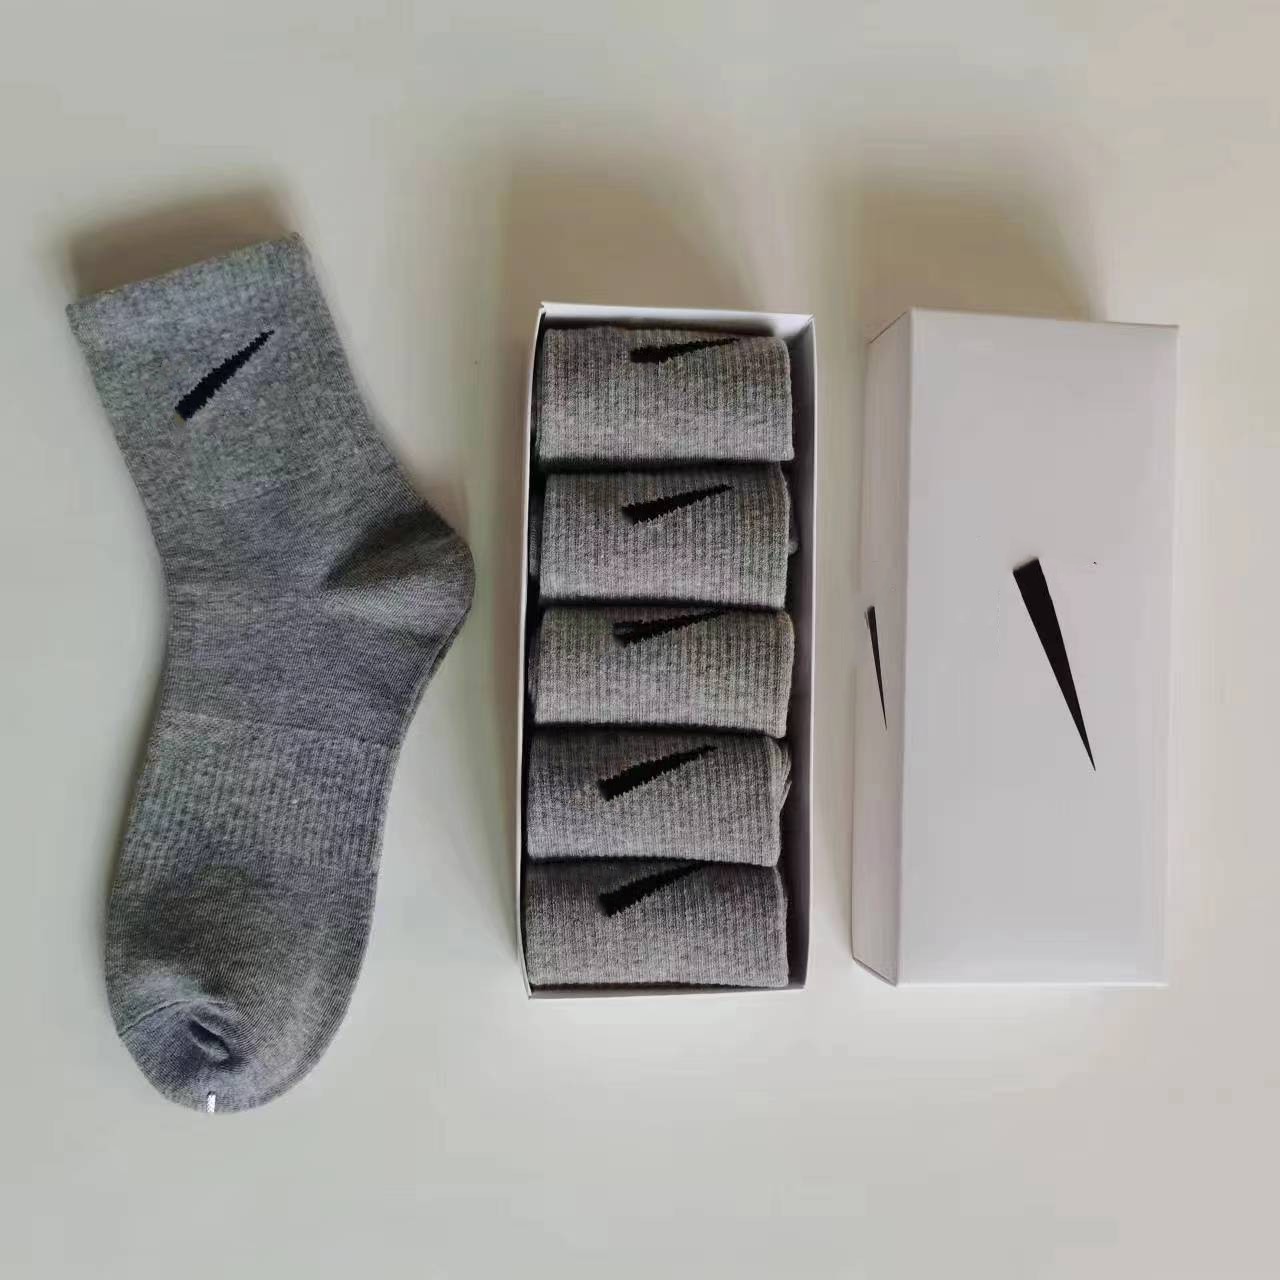 5 пар дизайнерских стильных спортивных носков с принтом буквы N из чистого хлопка для мужчин и женщин, хлопковые спортивные баскетбольные носки, упаковка в коробке